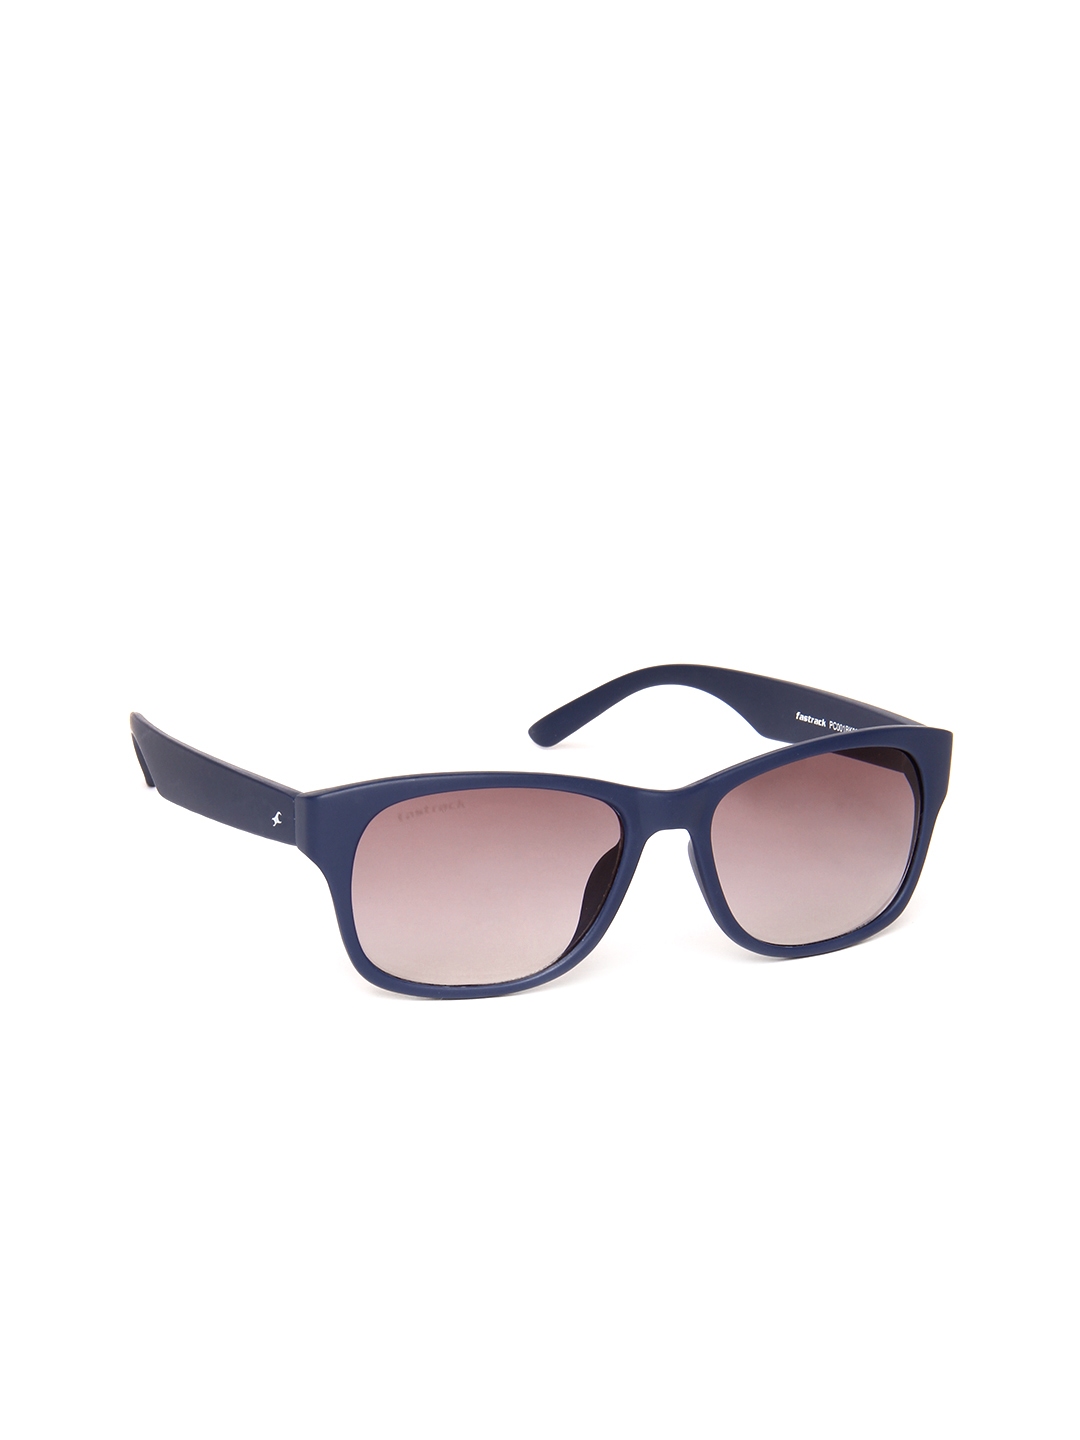 Buy Fastrack Men Gradient Wayfarer Sunglasses PC001BK22 - Sunglasses for Men  664630